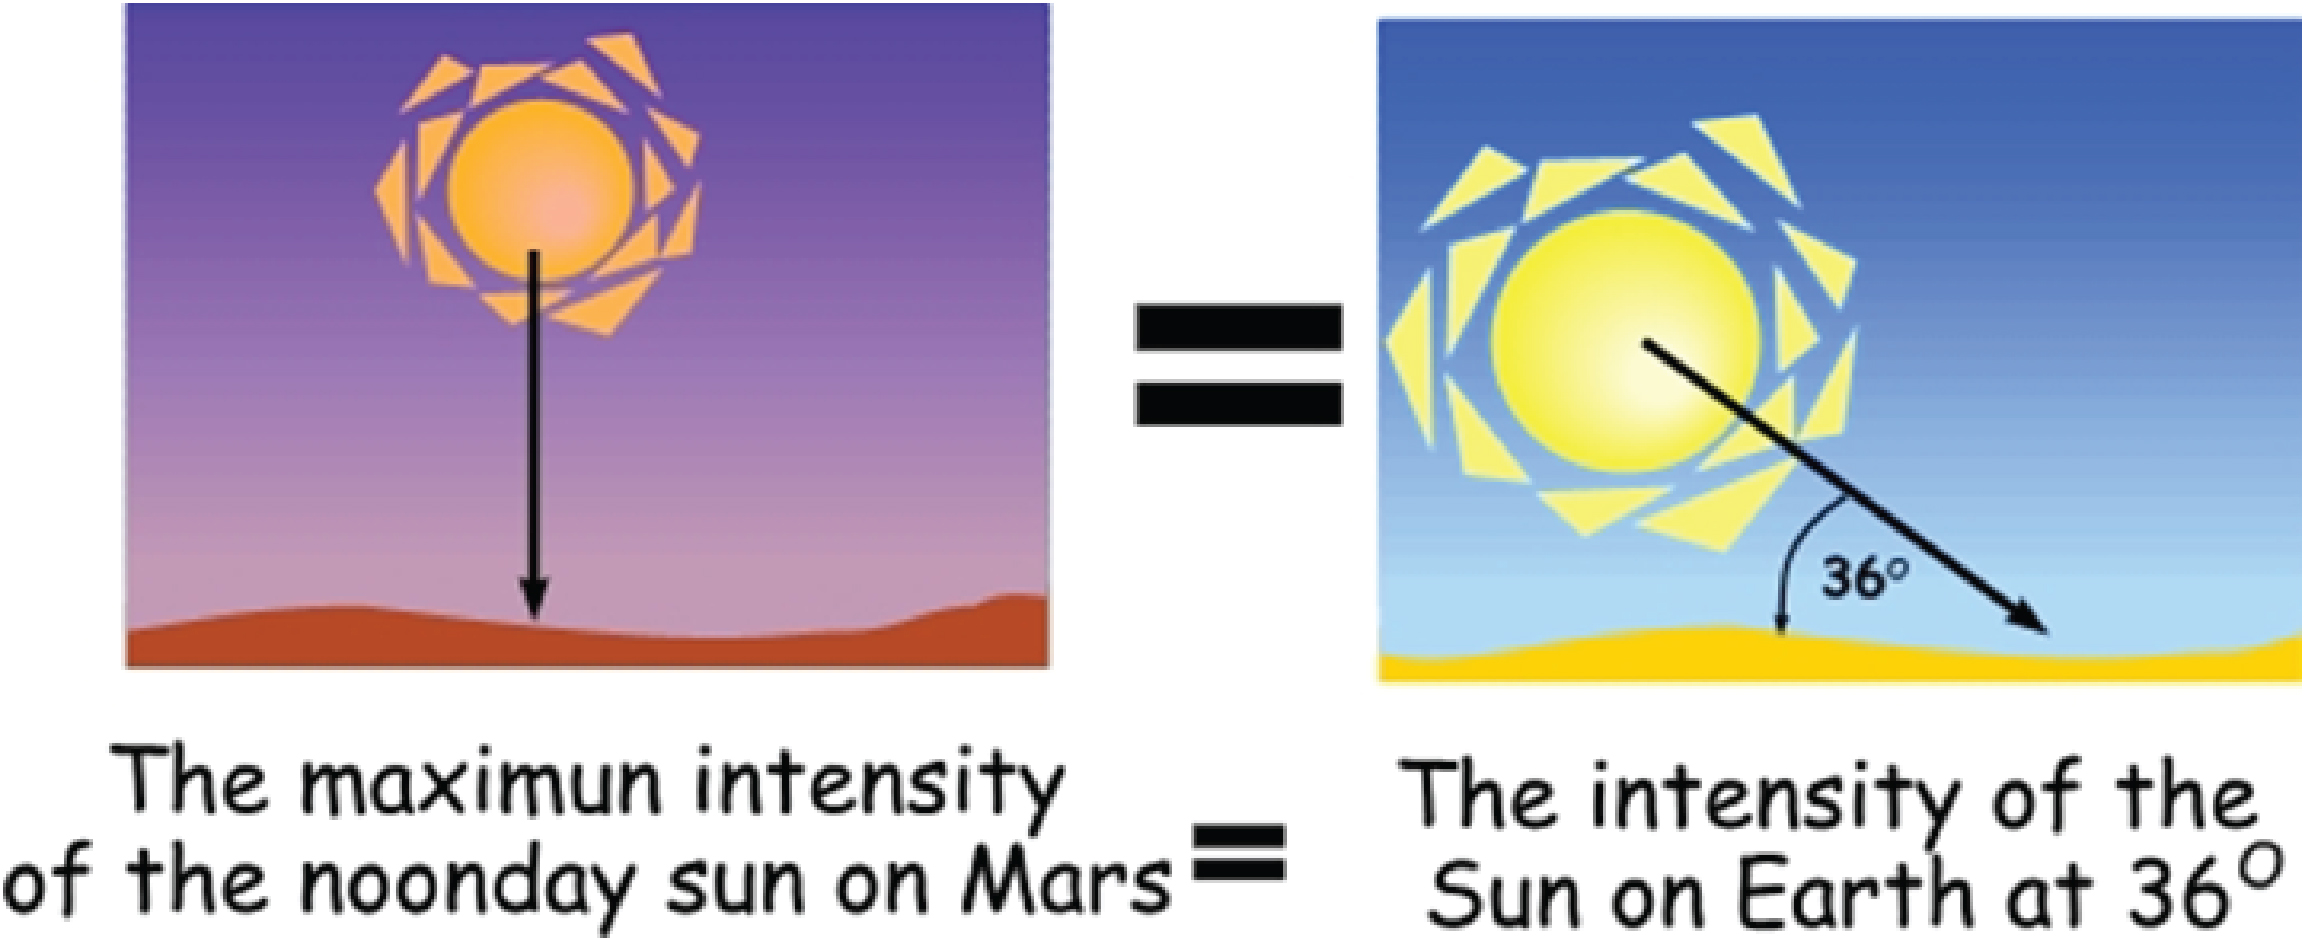 Например, максимальная интенсивность Солнца в полдень на Марсе, когда Солнце находится прямо над головой, приблизительно равна интенсивности Солнца на Земле в полдень 15 февраля в Миннеаполисе, Миннесота или Портленде, Орегон